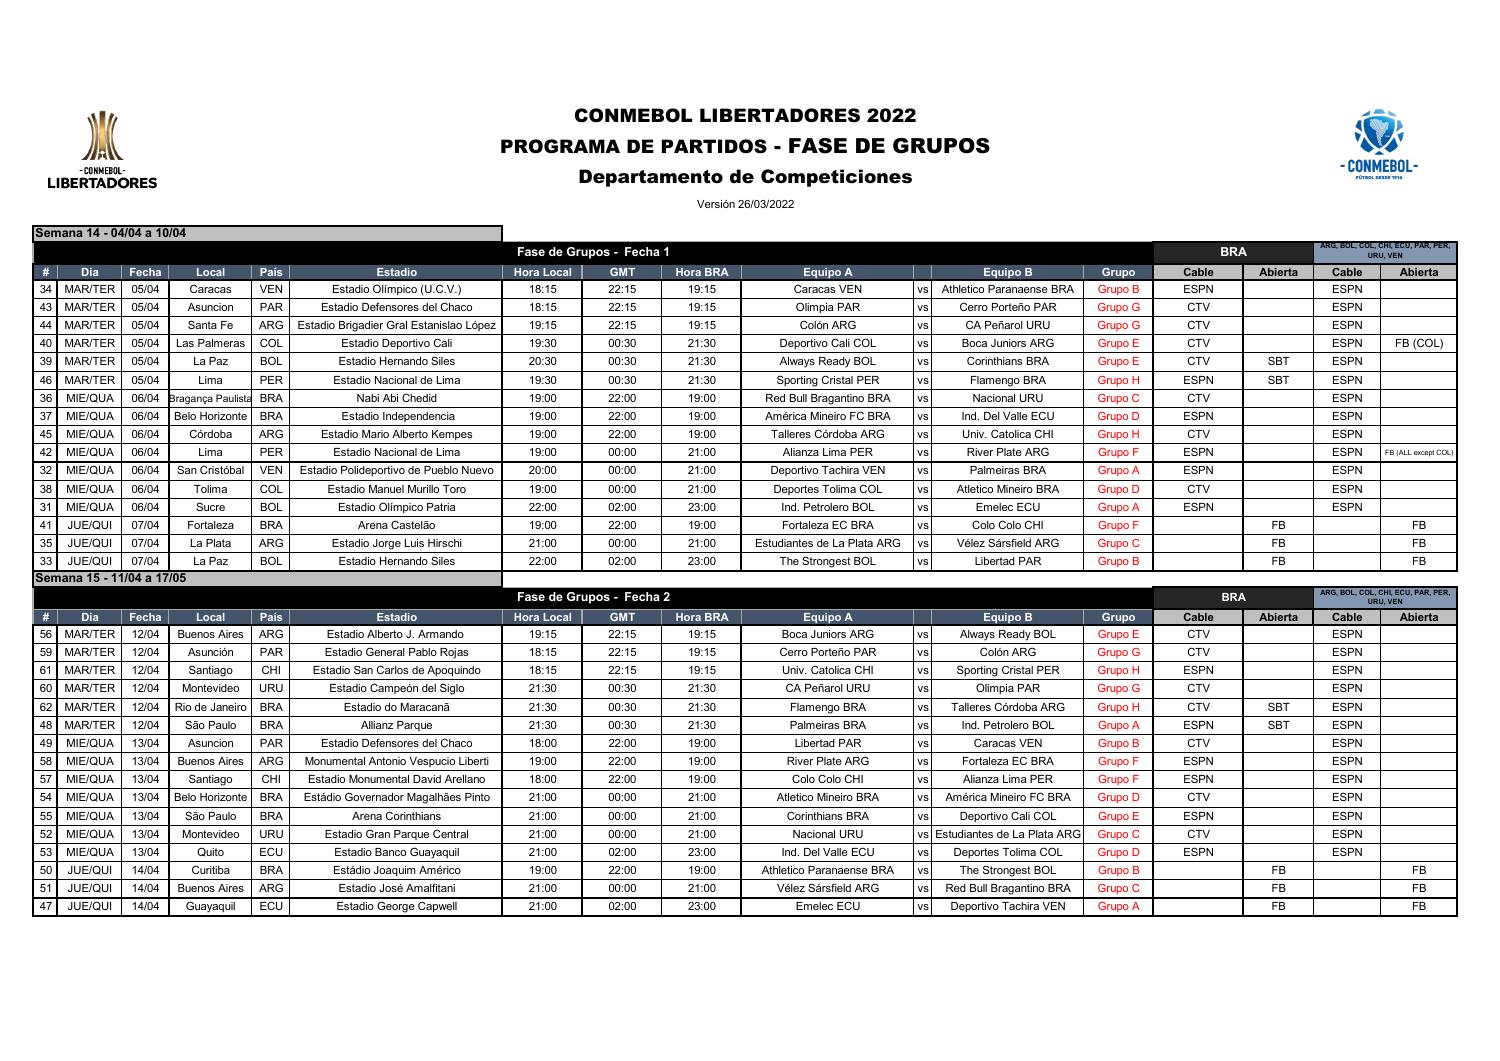 Tabela completa da fase de grupos da Libertadores.pdf DocDroid